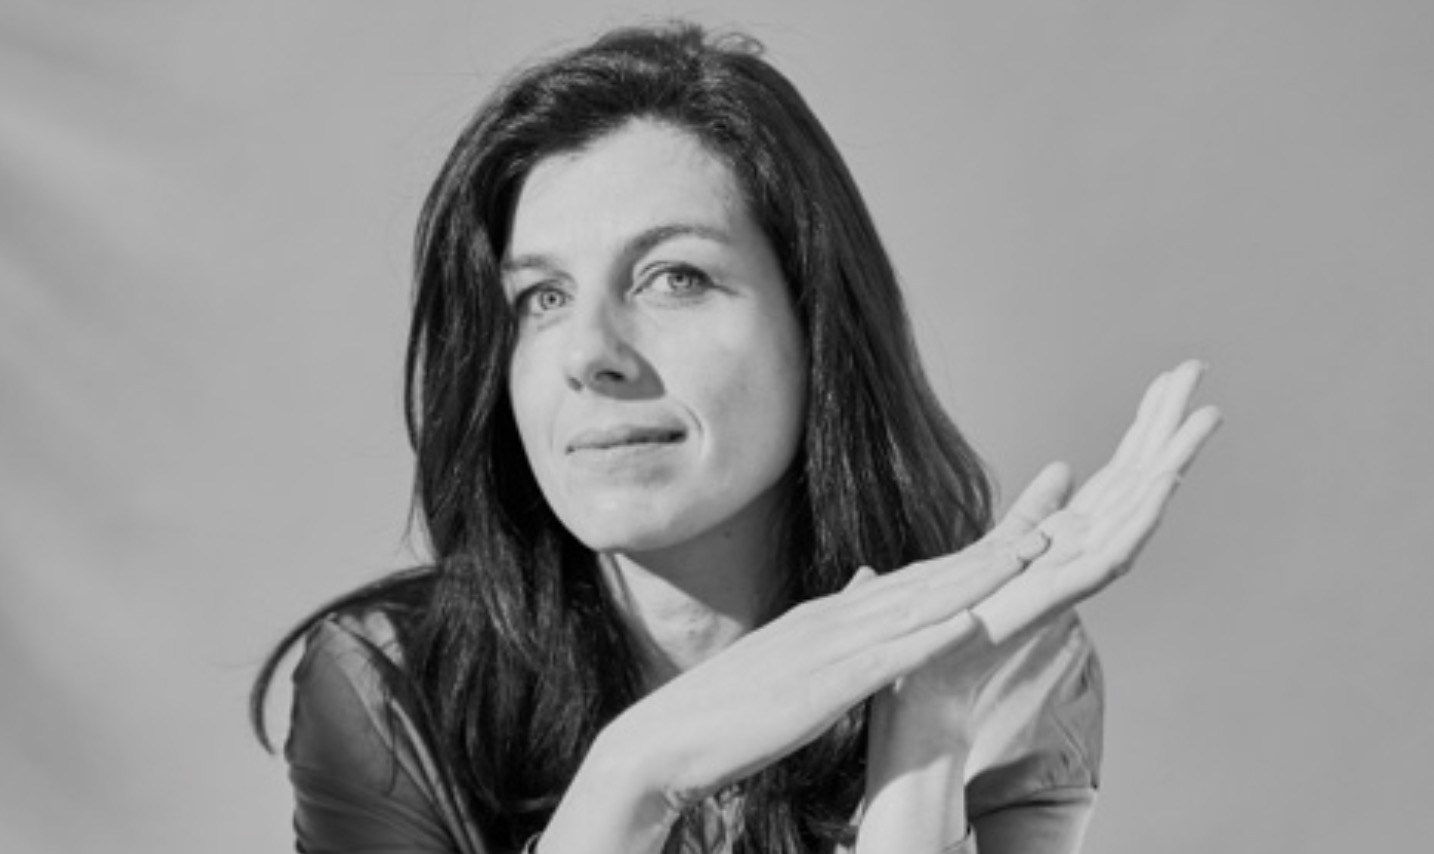 Aurélie Russanowska aan de slag bij Publicis Groupe